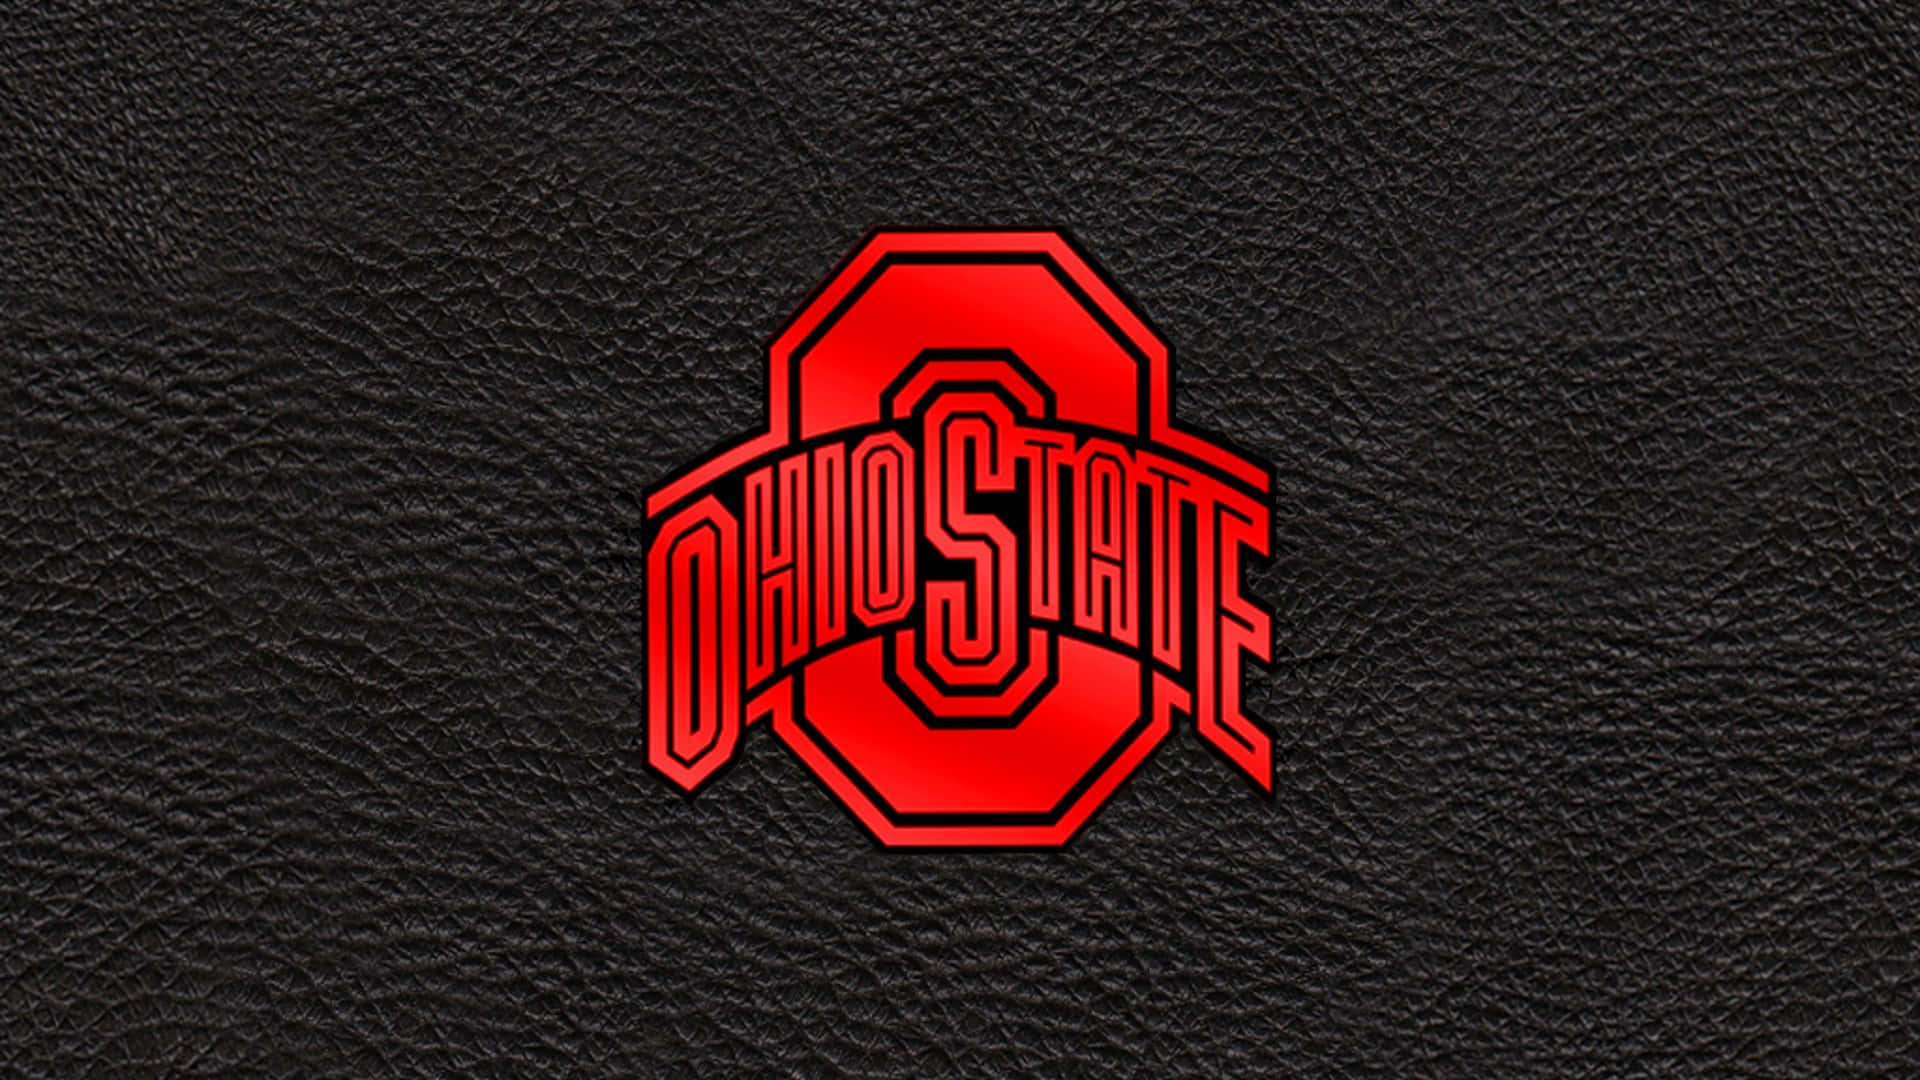 Ohiostate Logo Auf Schwarzem Lederhintergrund Wallpaper